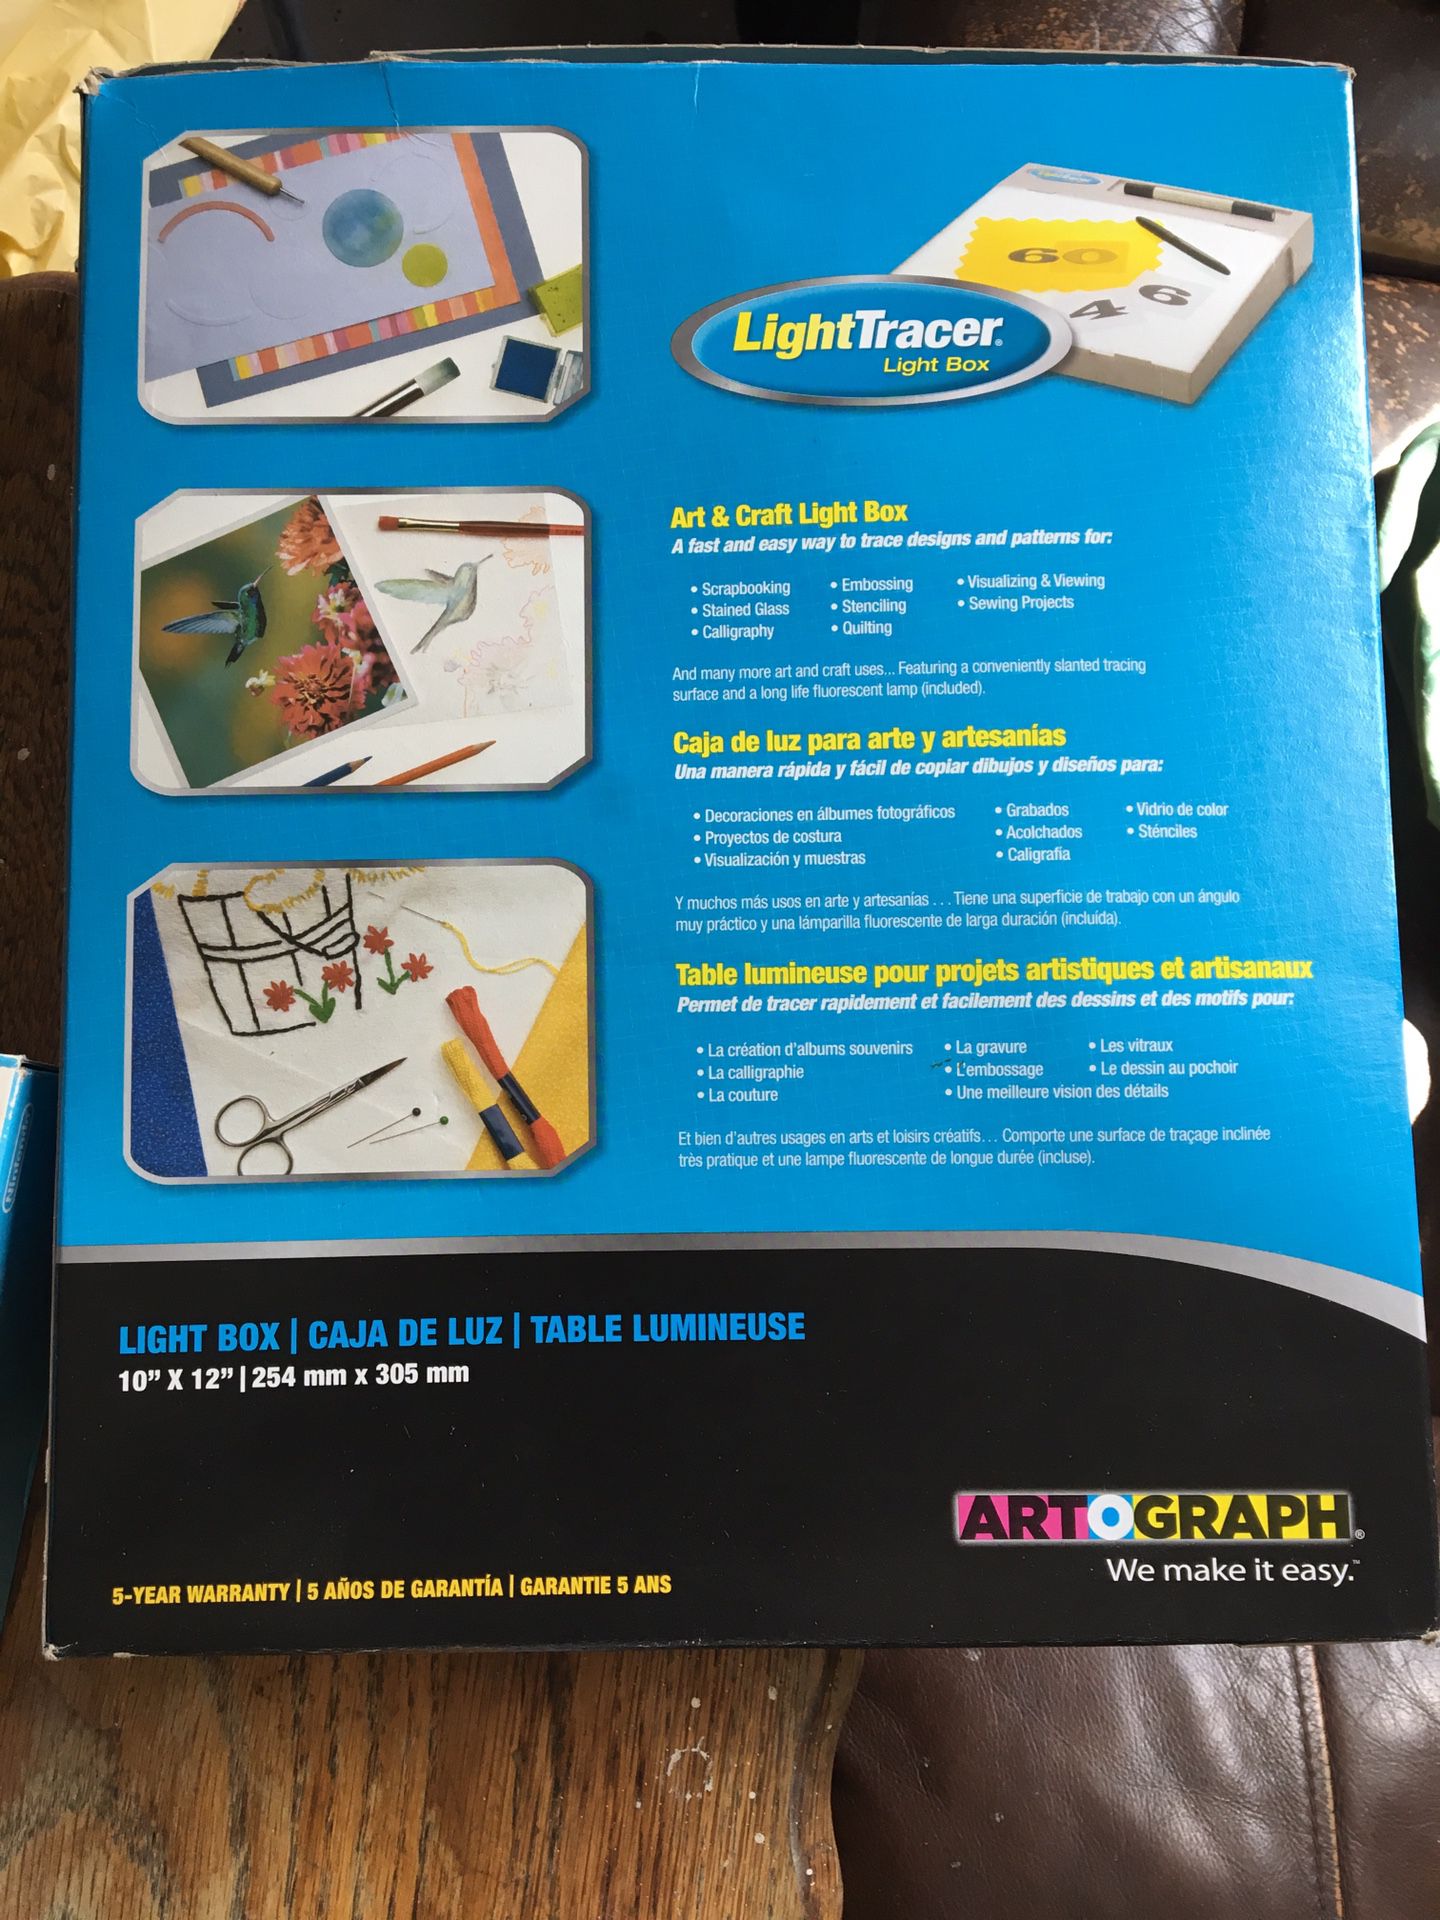 Artograph LightTracer Light Box